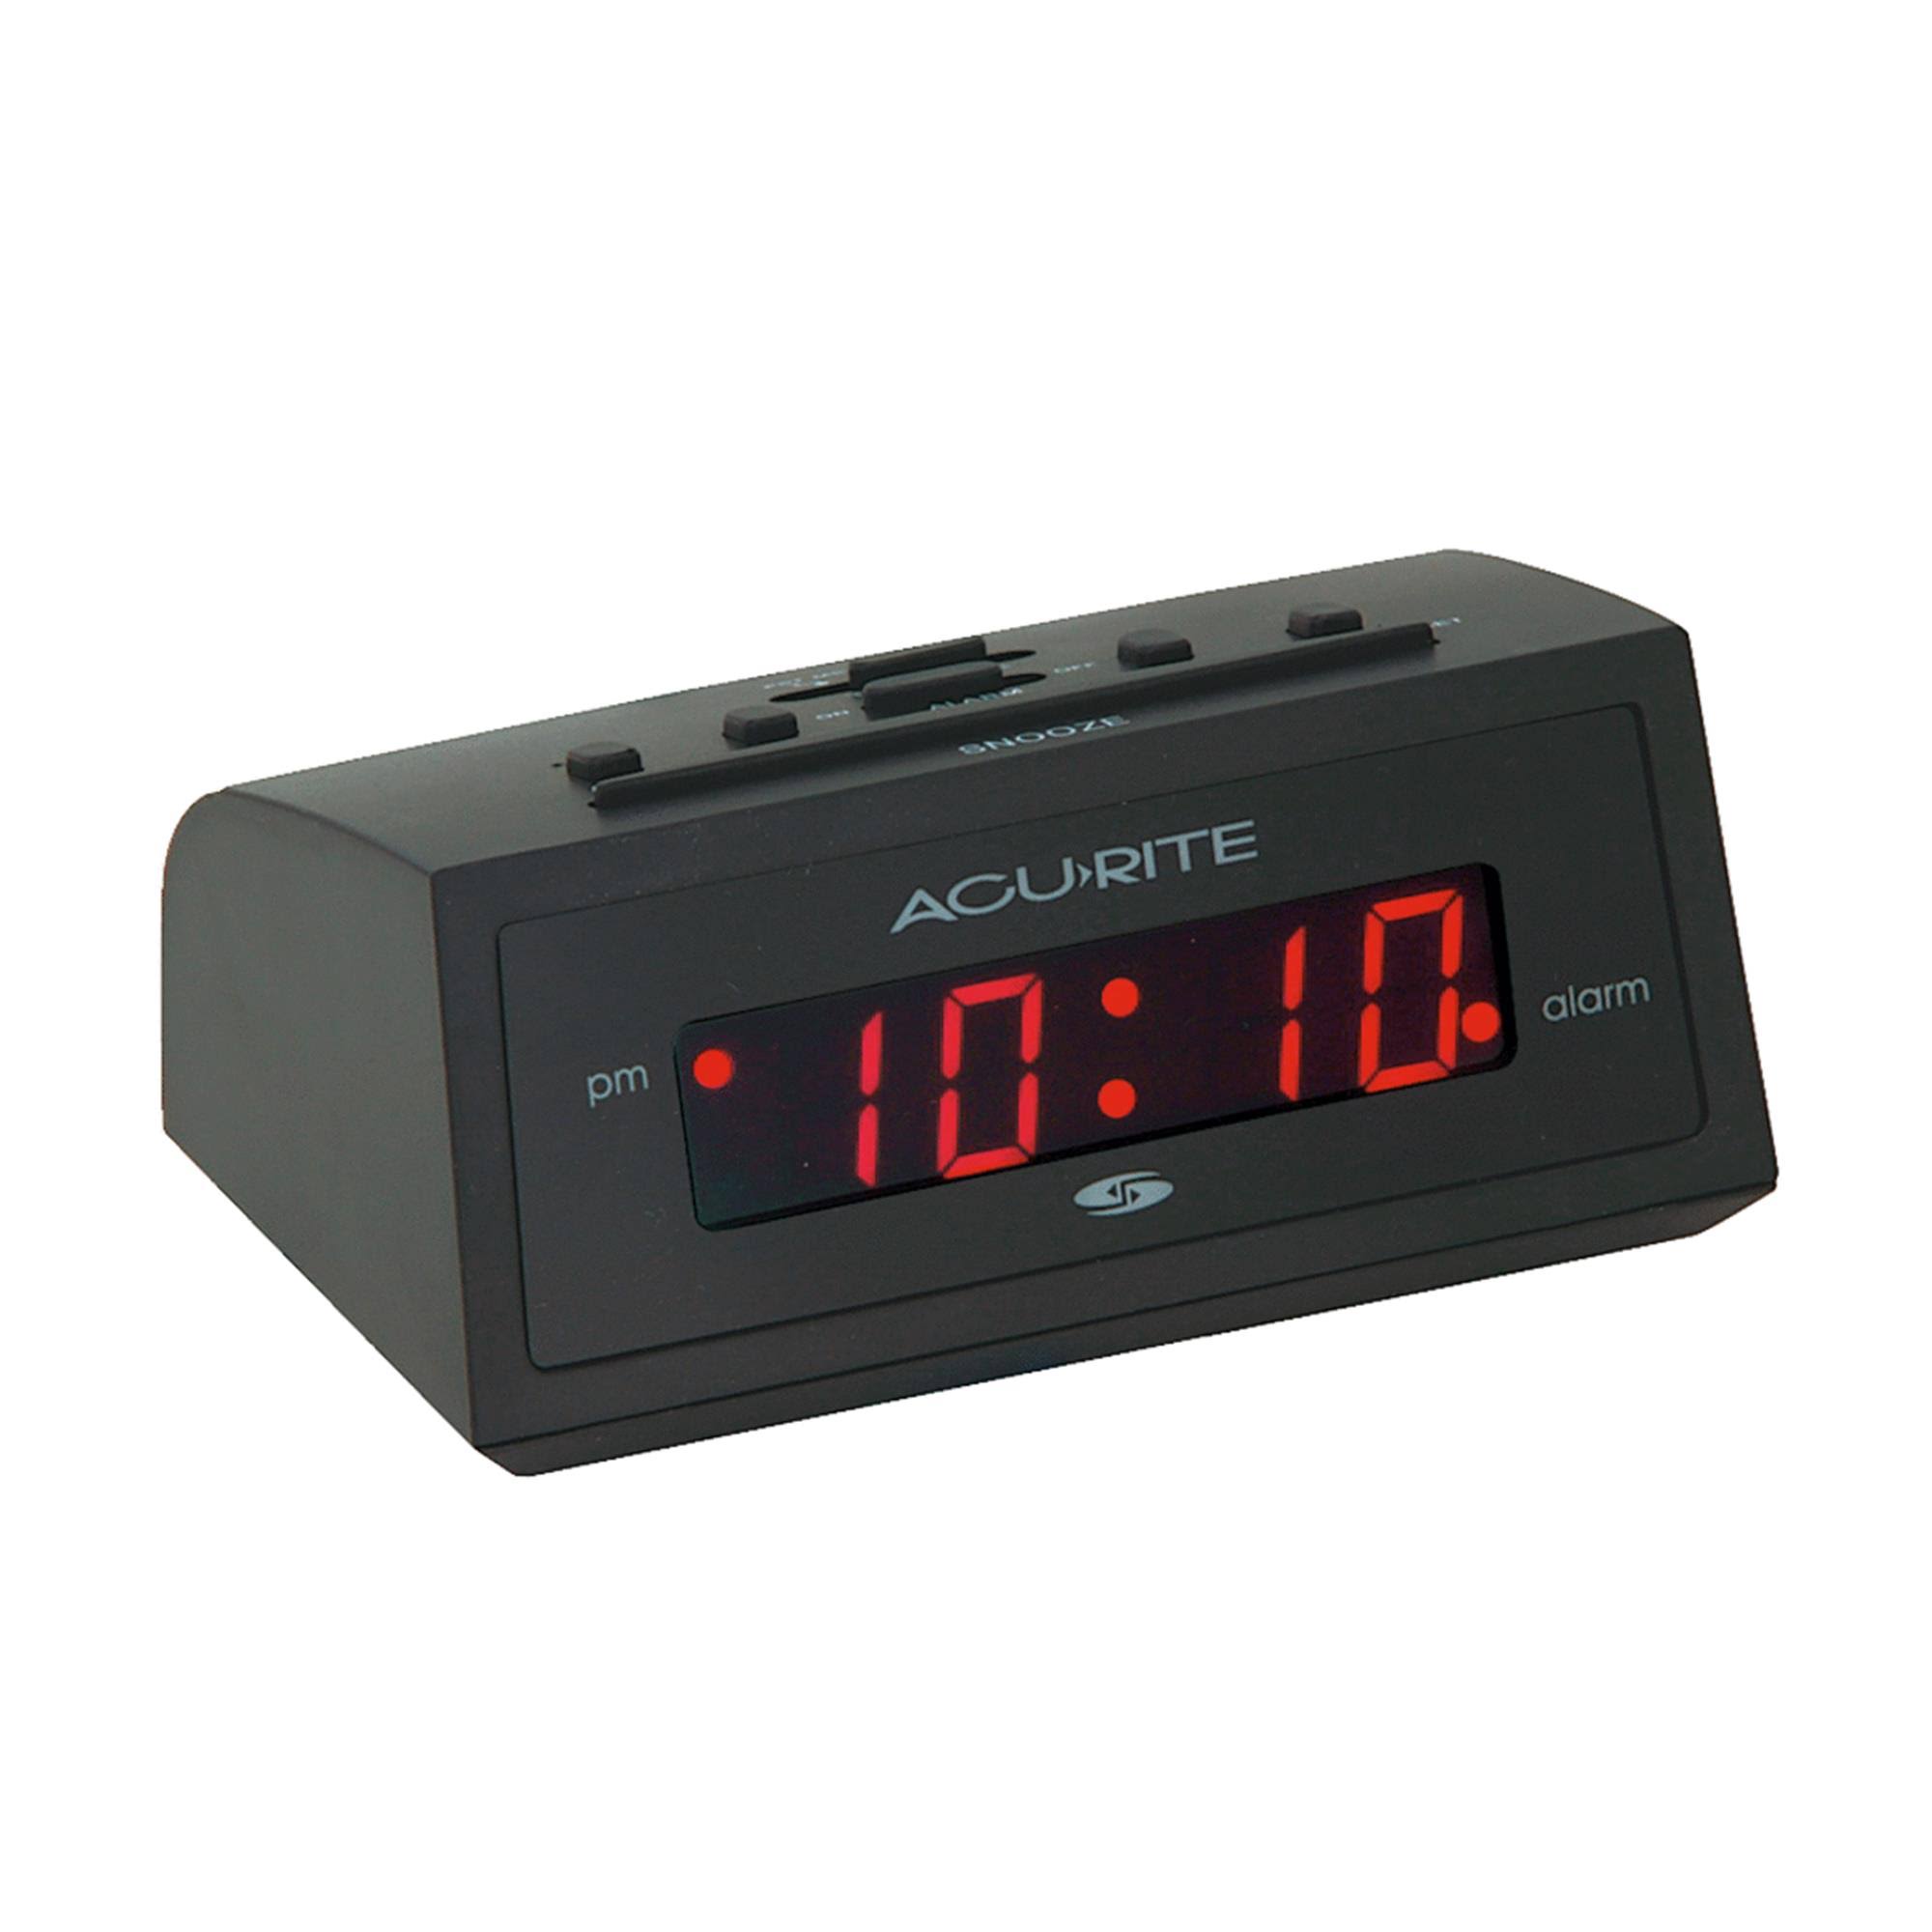 AcuRite 13002 Intelli-Time Digital Alarm Clock